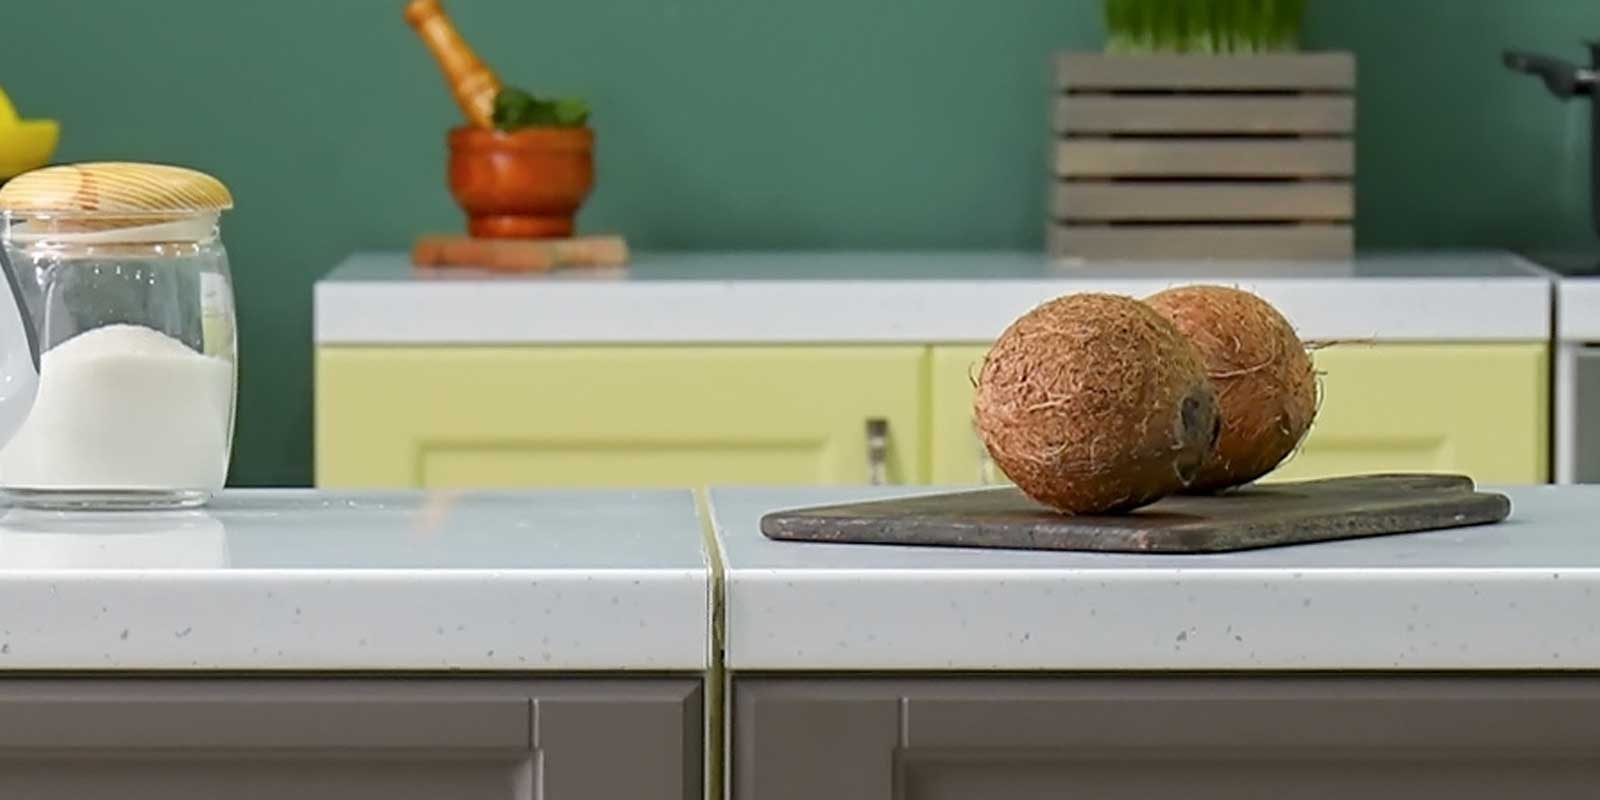 Coconuts on countertop